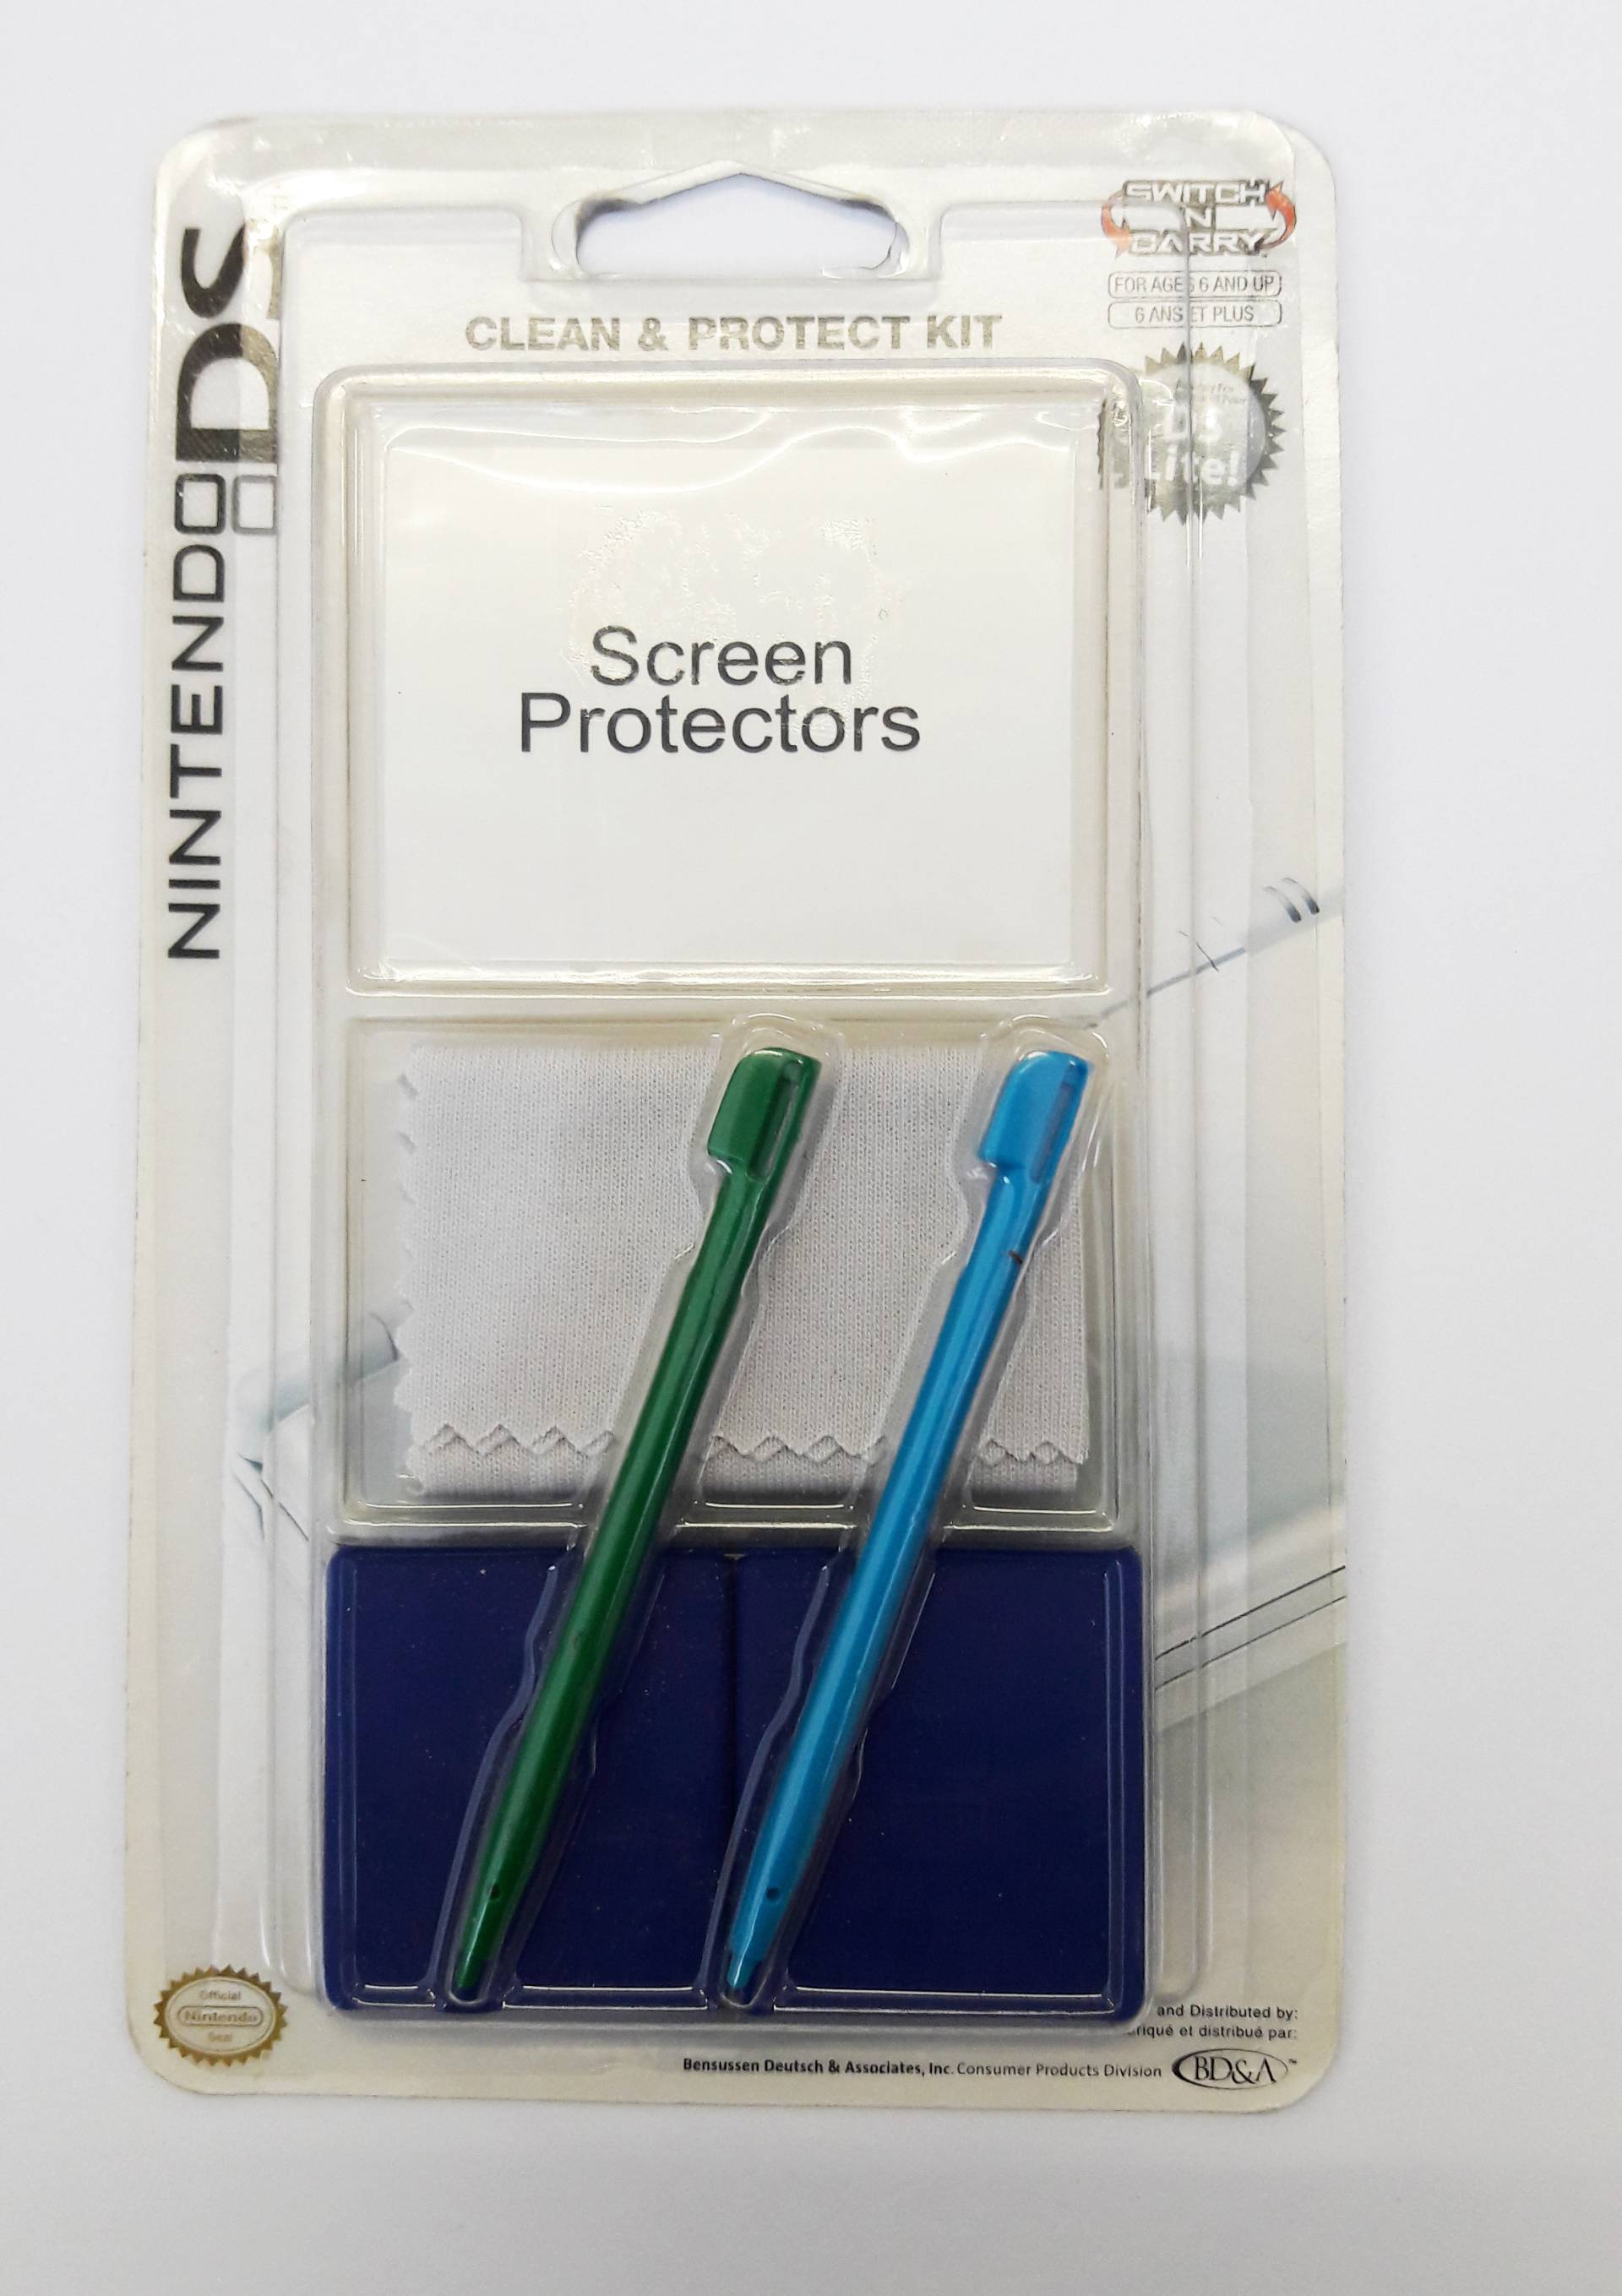 Nintendo DS Clean & Protect Kit - farblich sortiert von BD&A Bensussen Deutsch & Associates